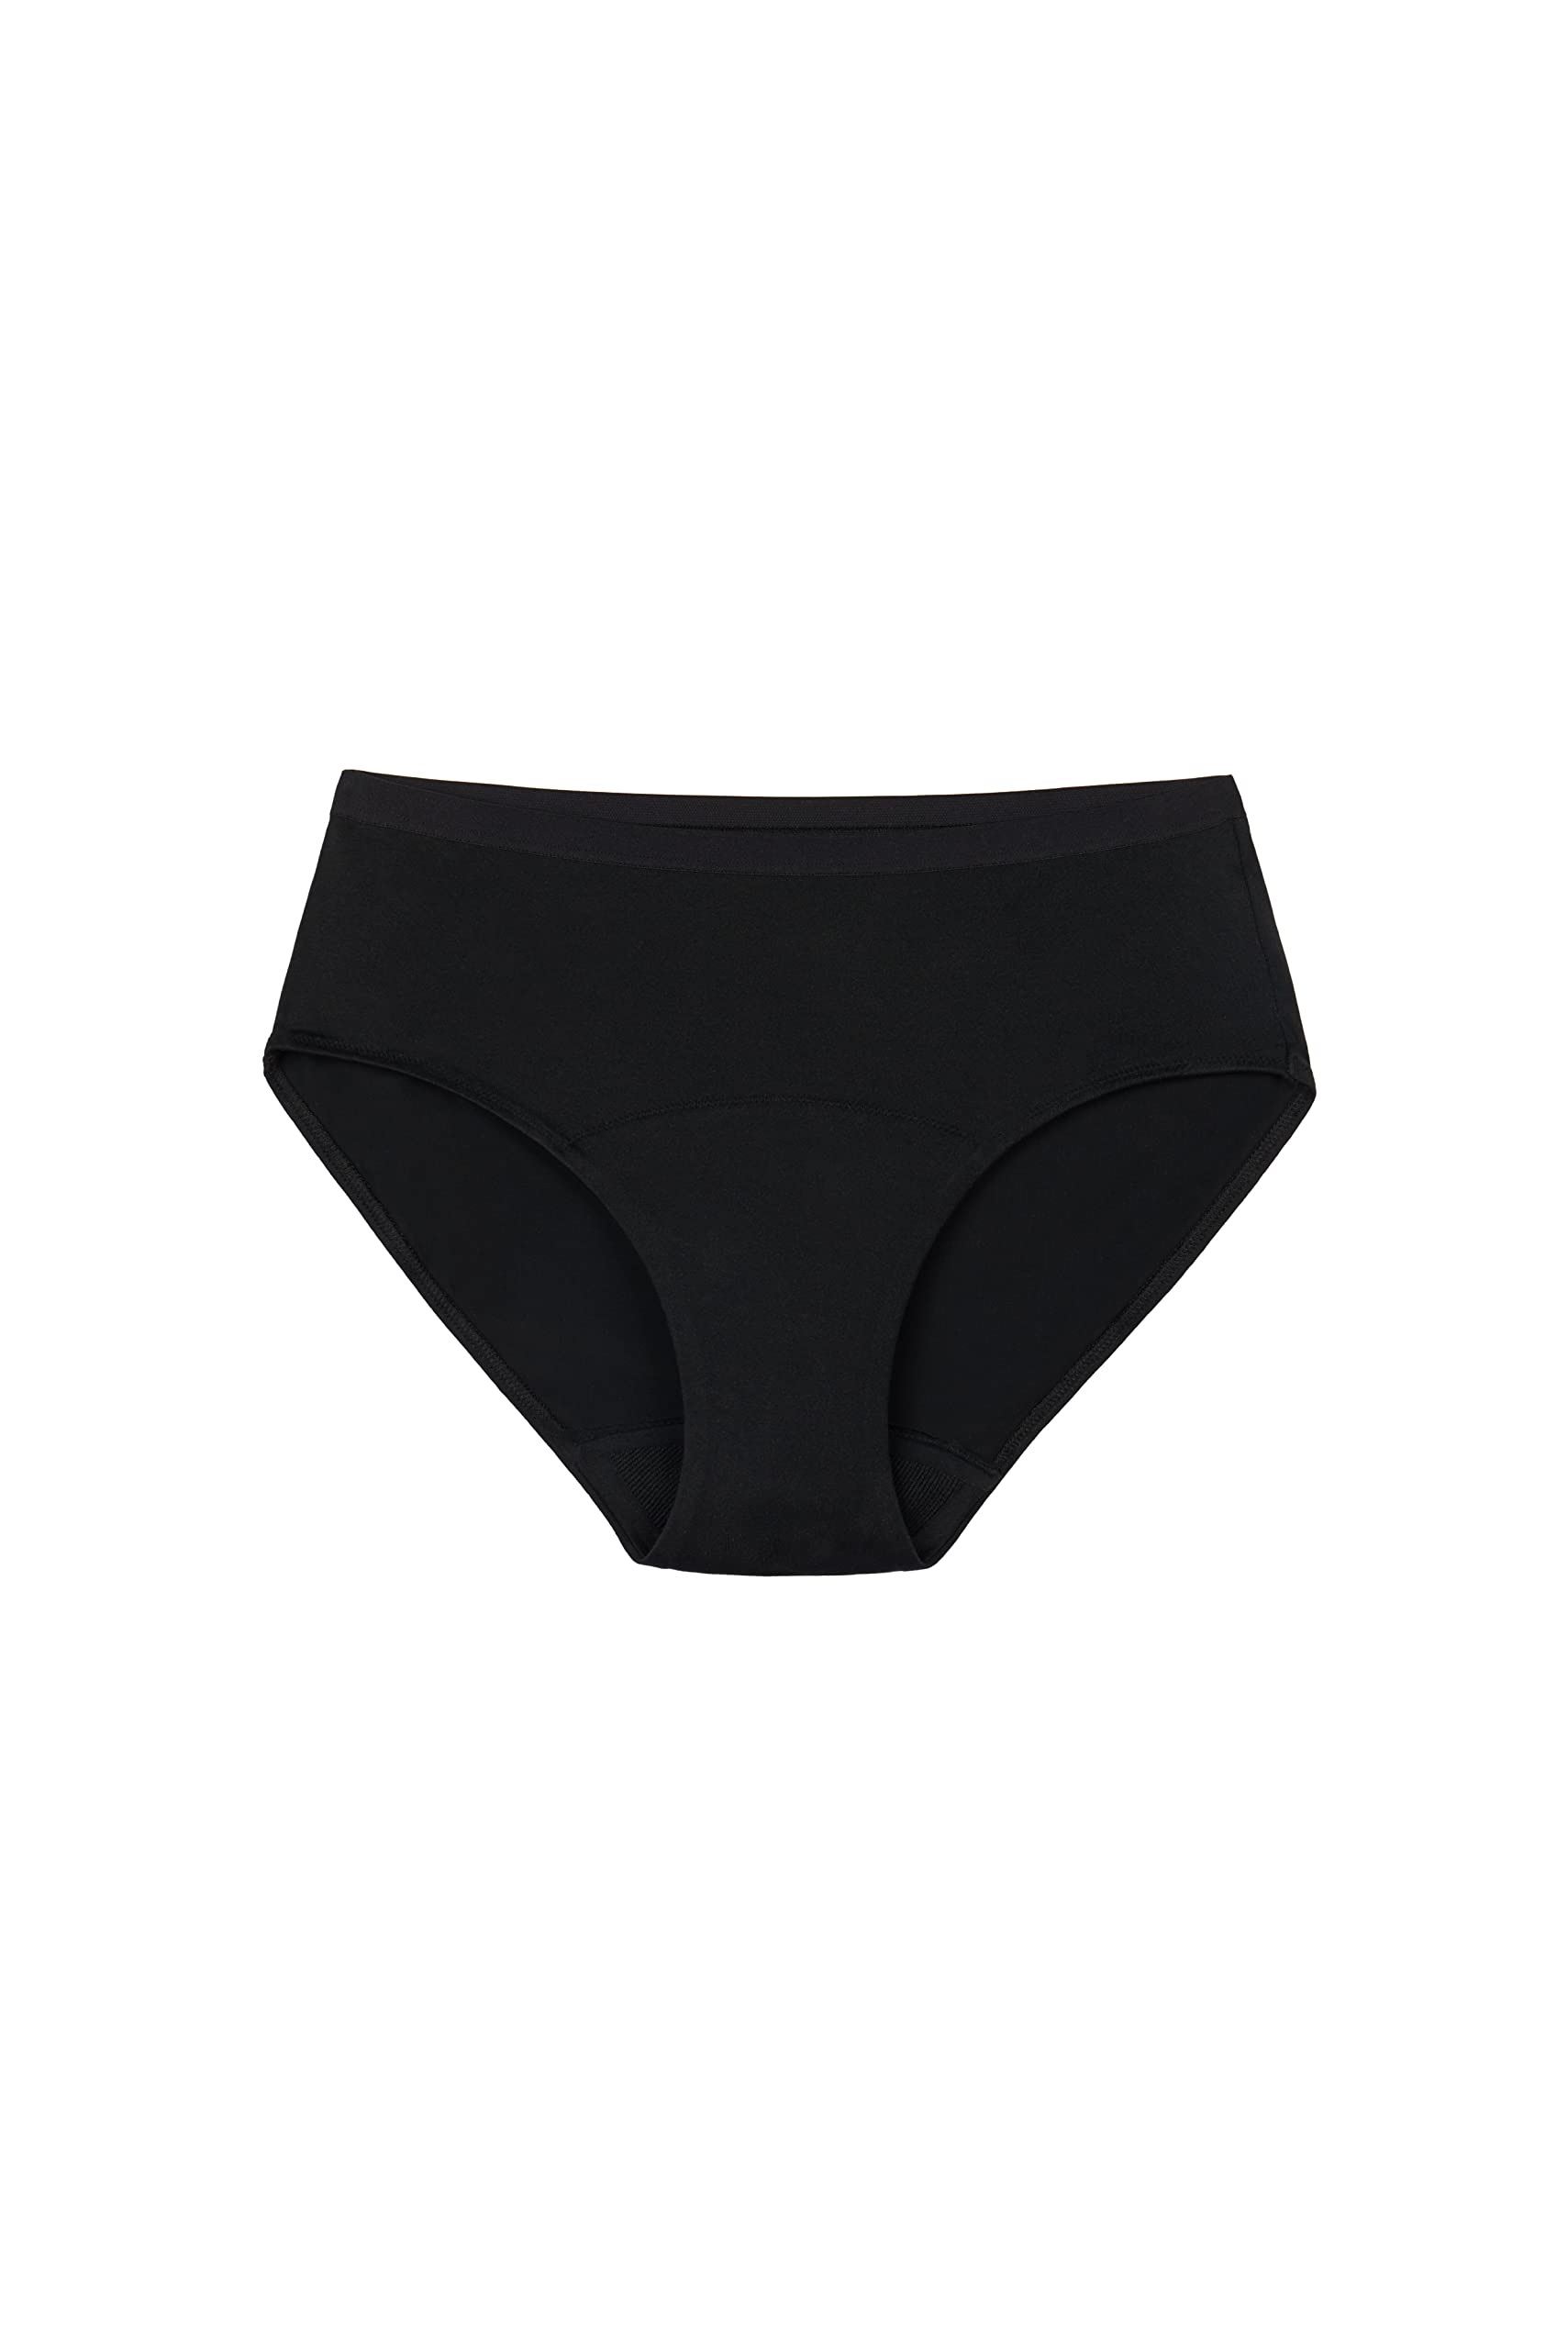 Speax by Thinx Bikini Women's Underwear for Bladder Leak Protection, Incontinence  Underwear for Women